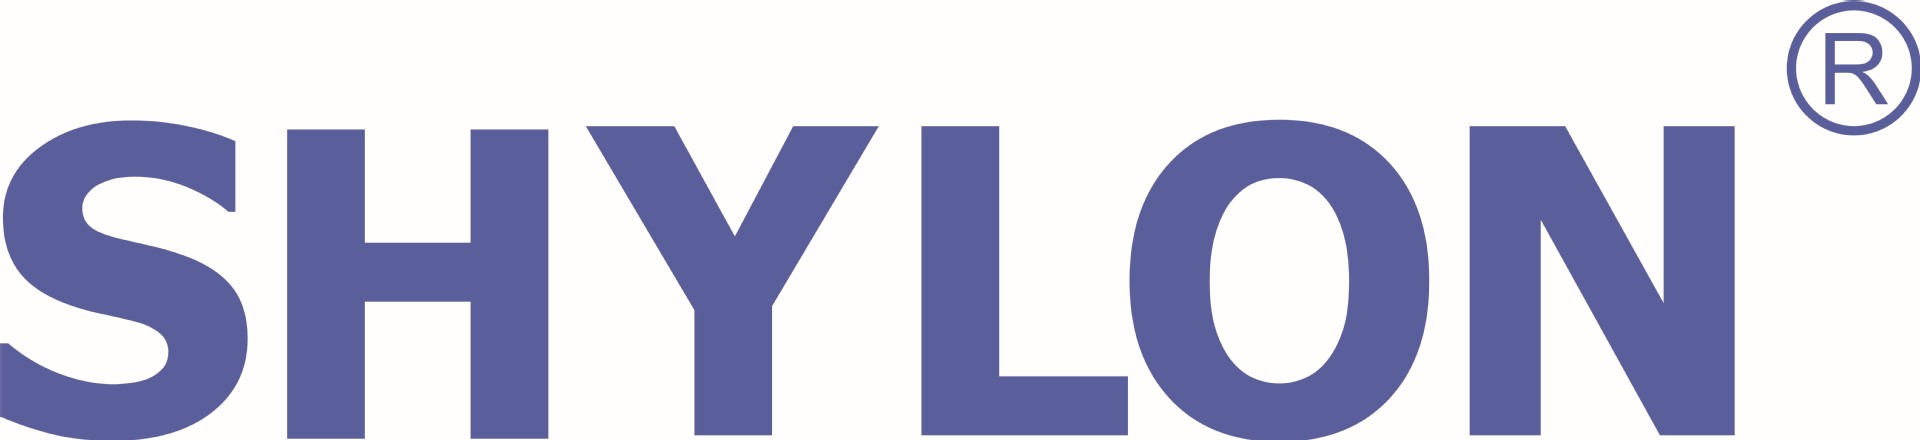 SHYLON logo(四色)